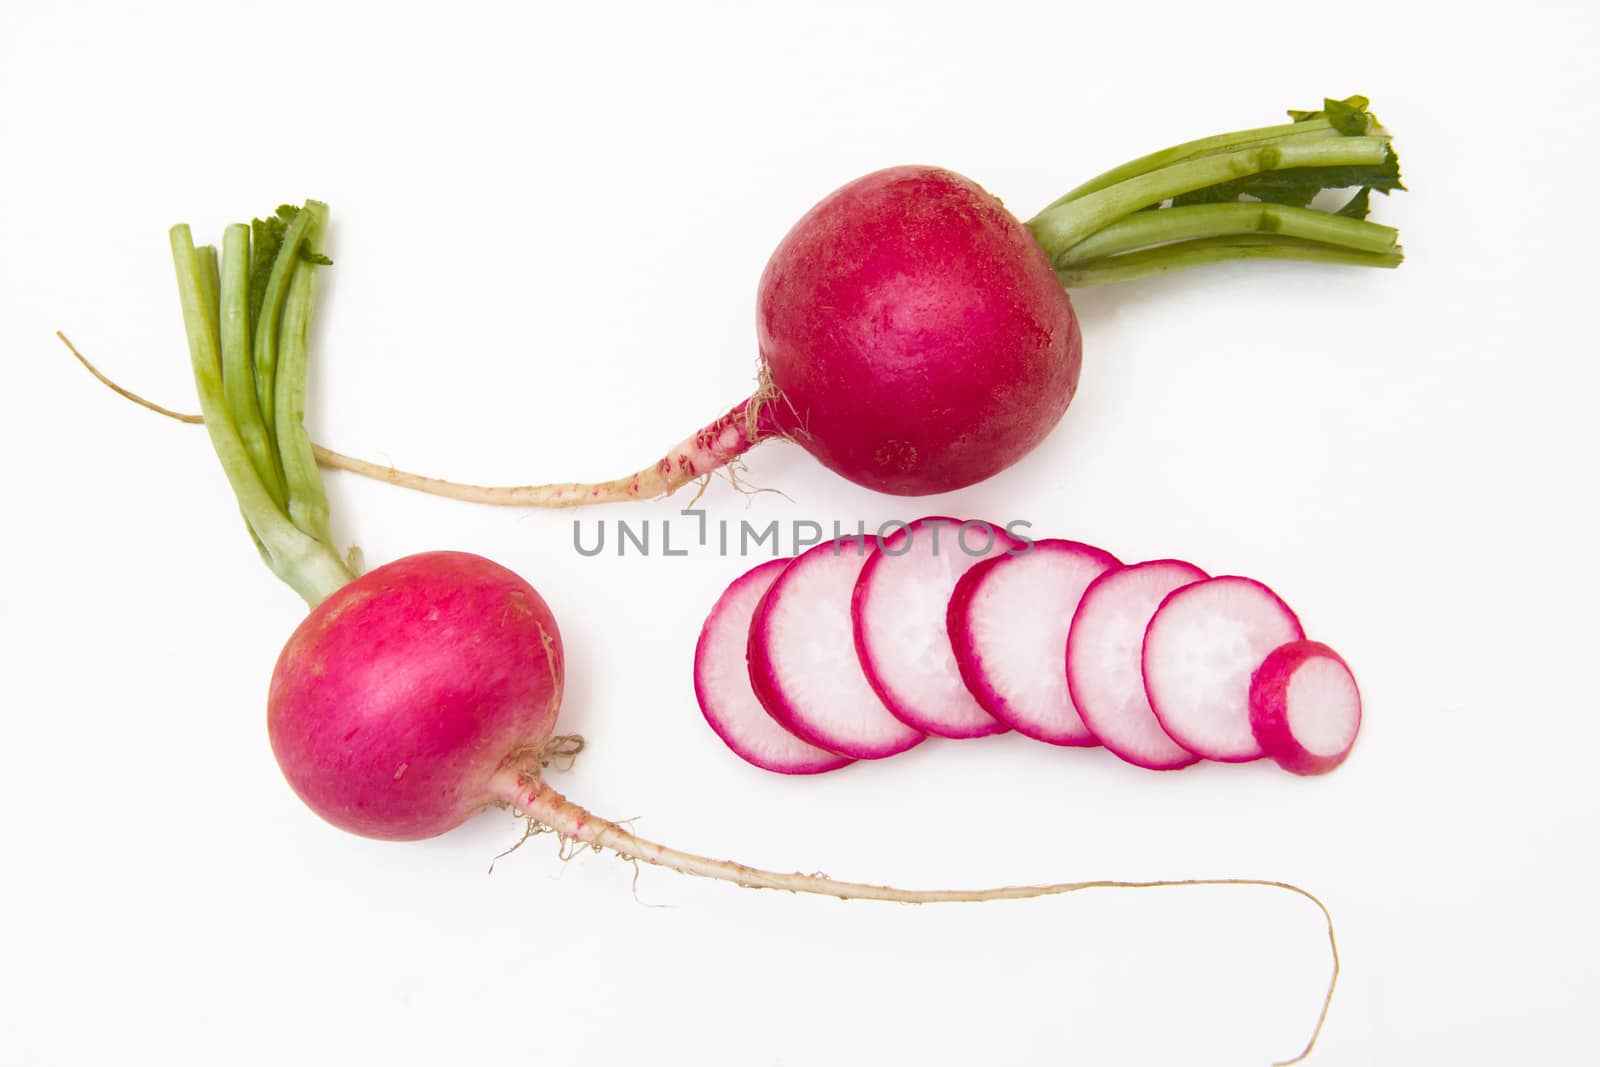 Sliced radishes on white background